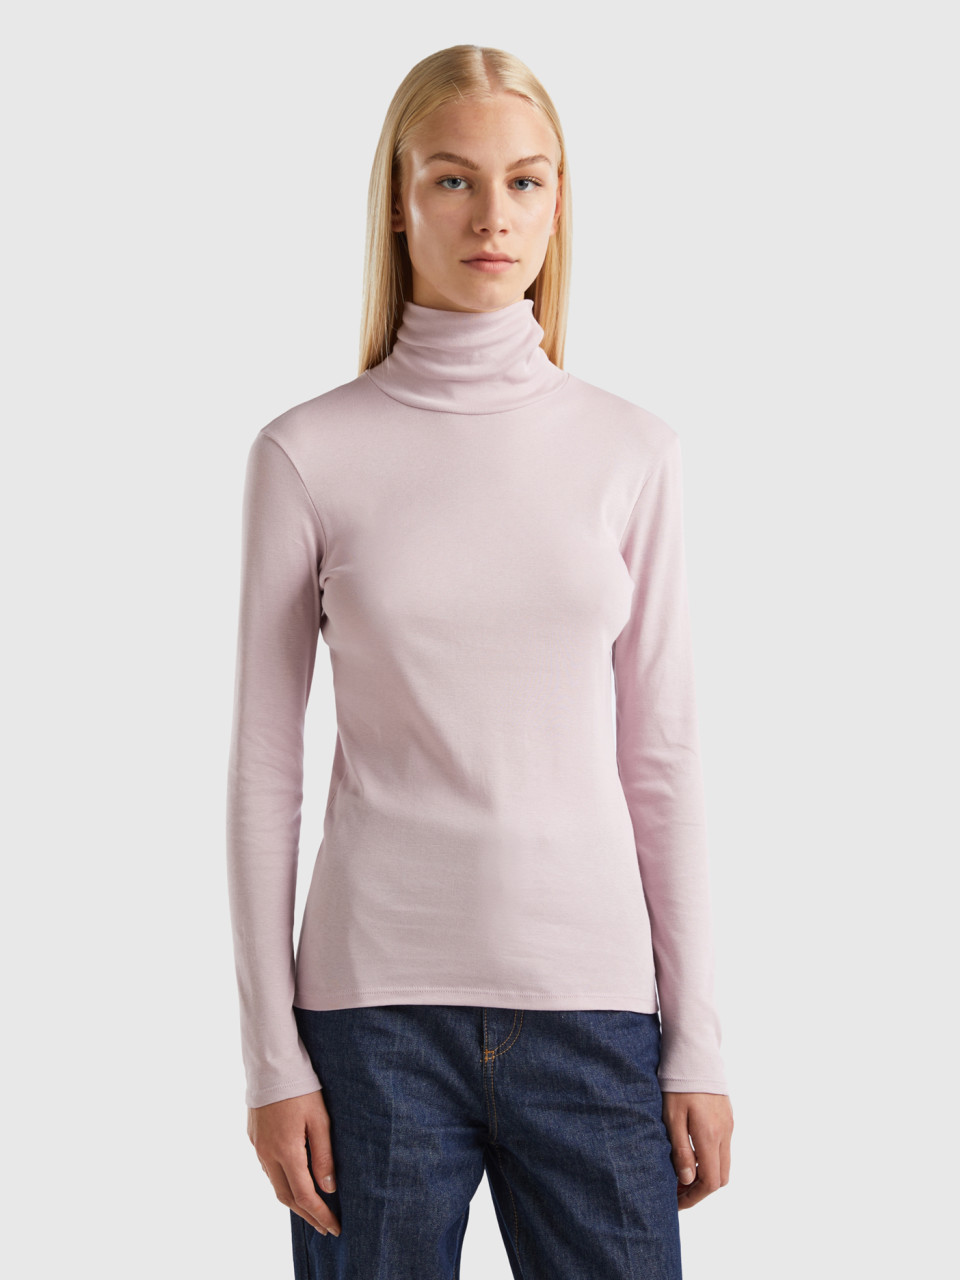 Benetton, Long Sleeve T-shirt With High Neck, Soft Pink, Women